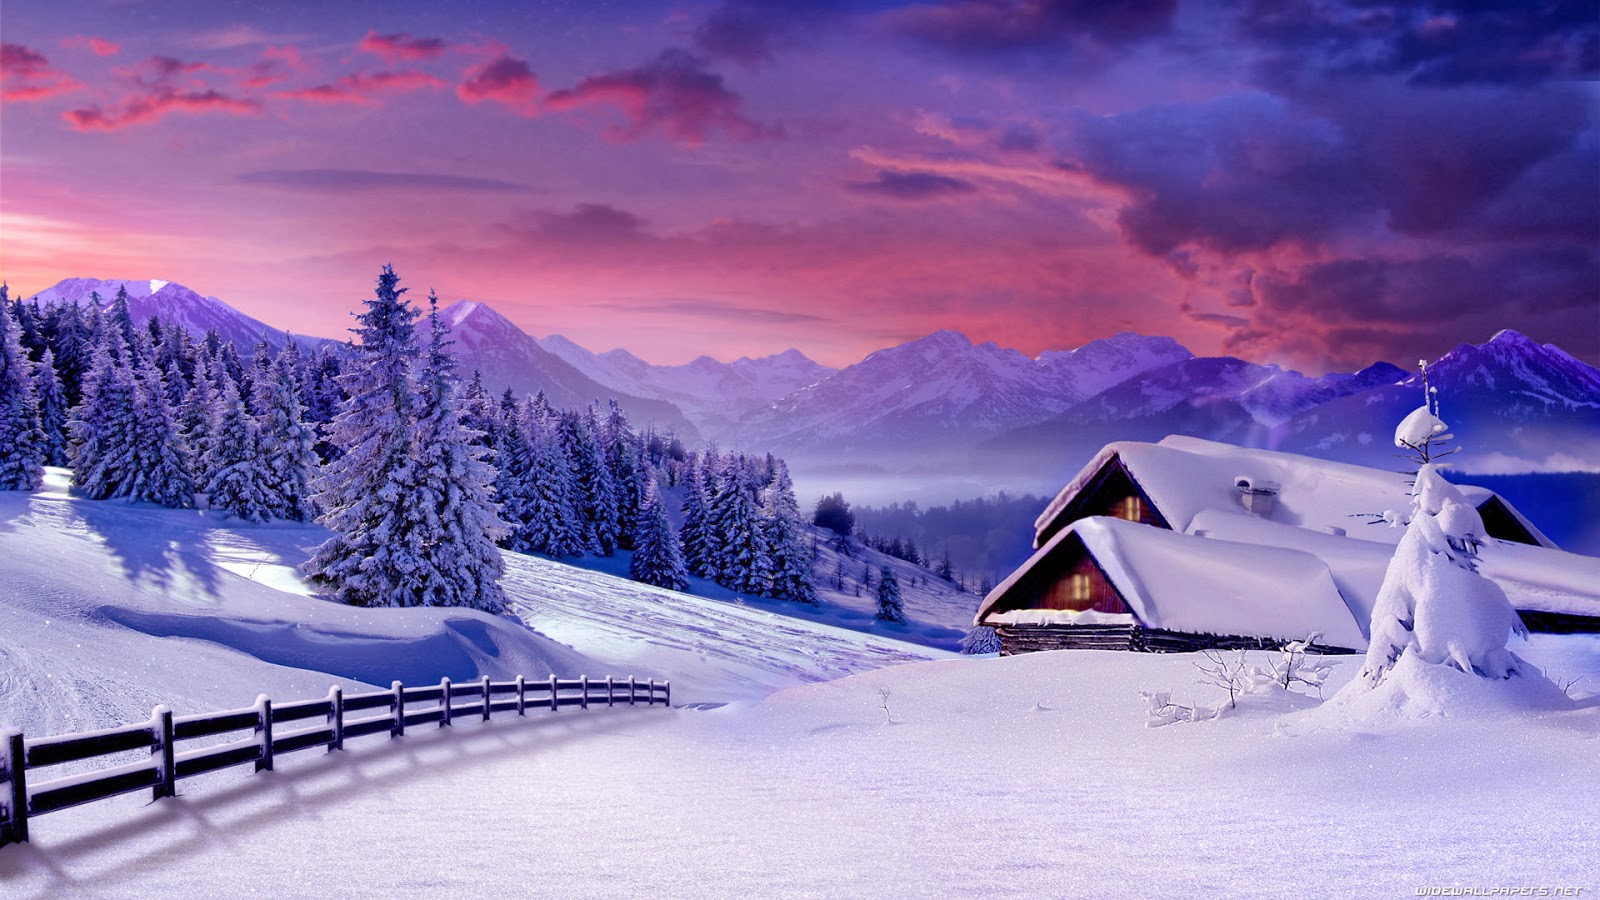 Winter Scenes Wallpapers Backgrounds 1600x900